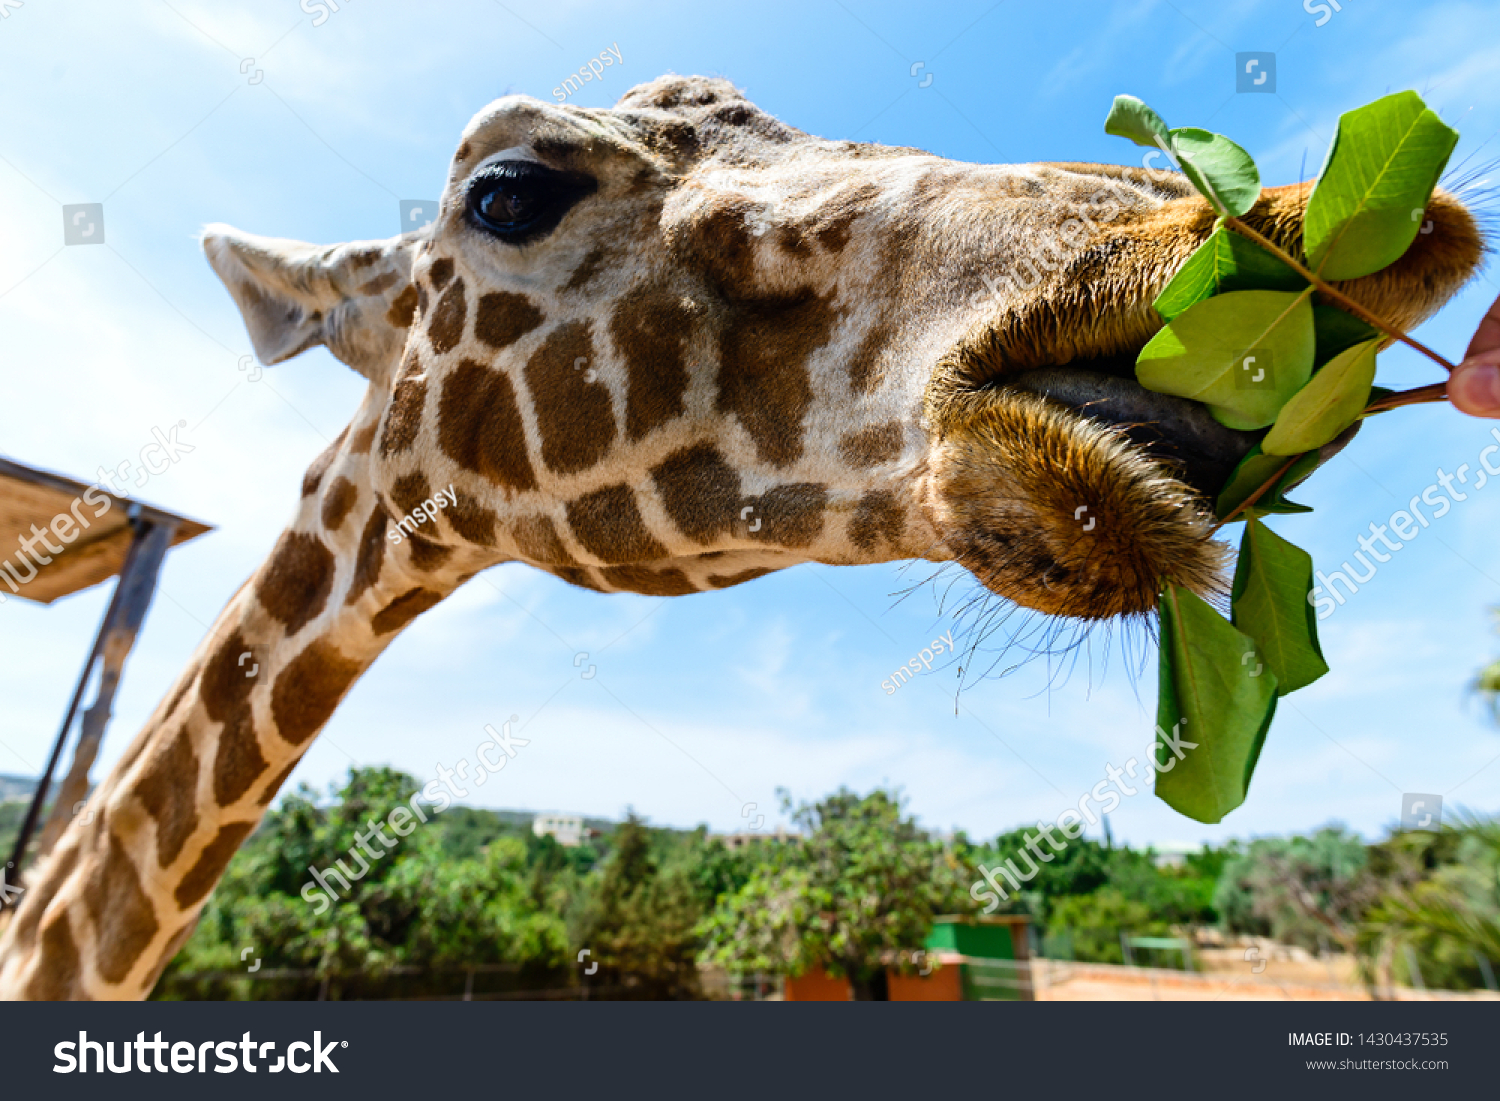 giraffes eating